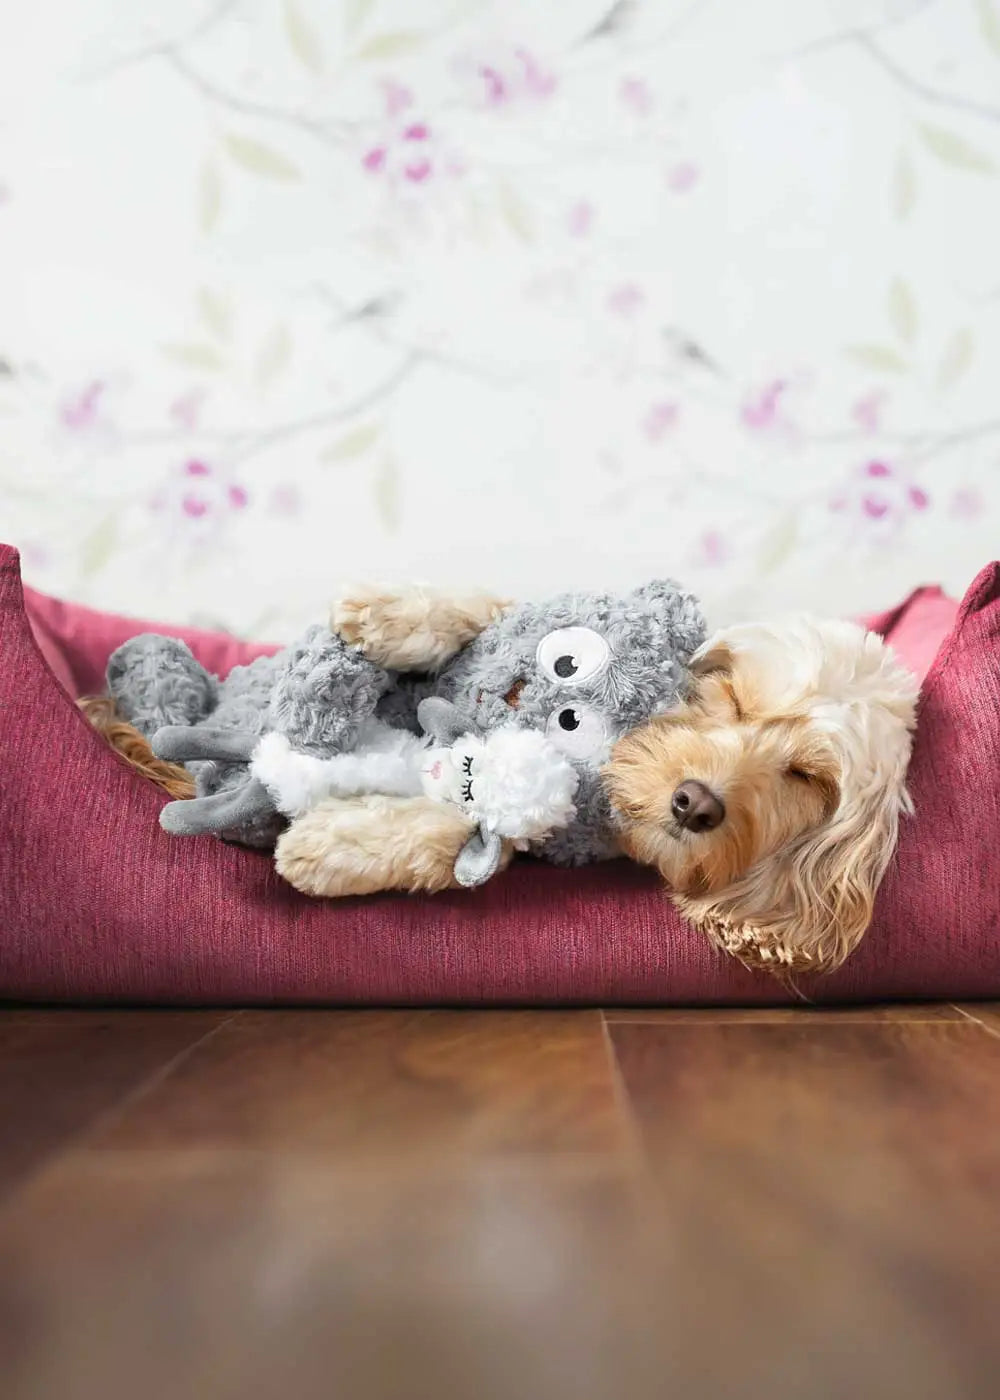 Cute dog cuddling with her teddy bear plush toy 